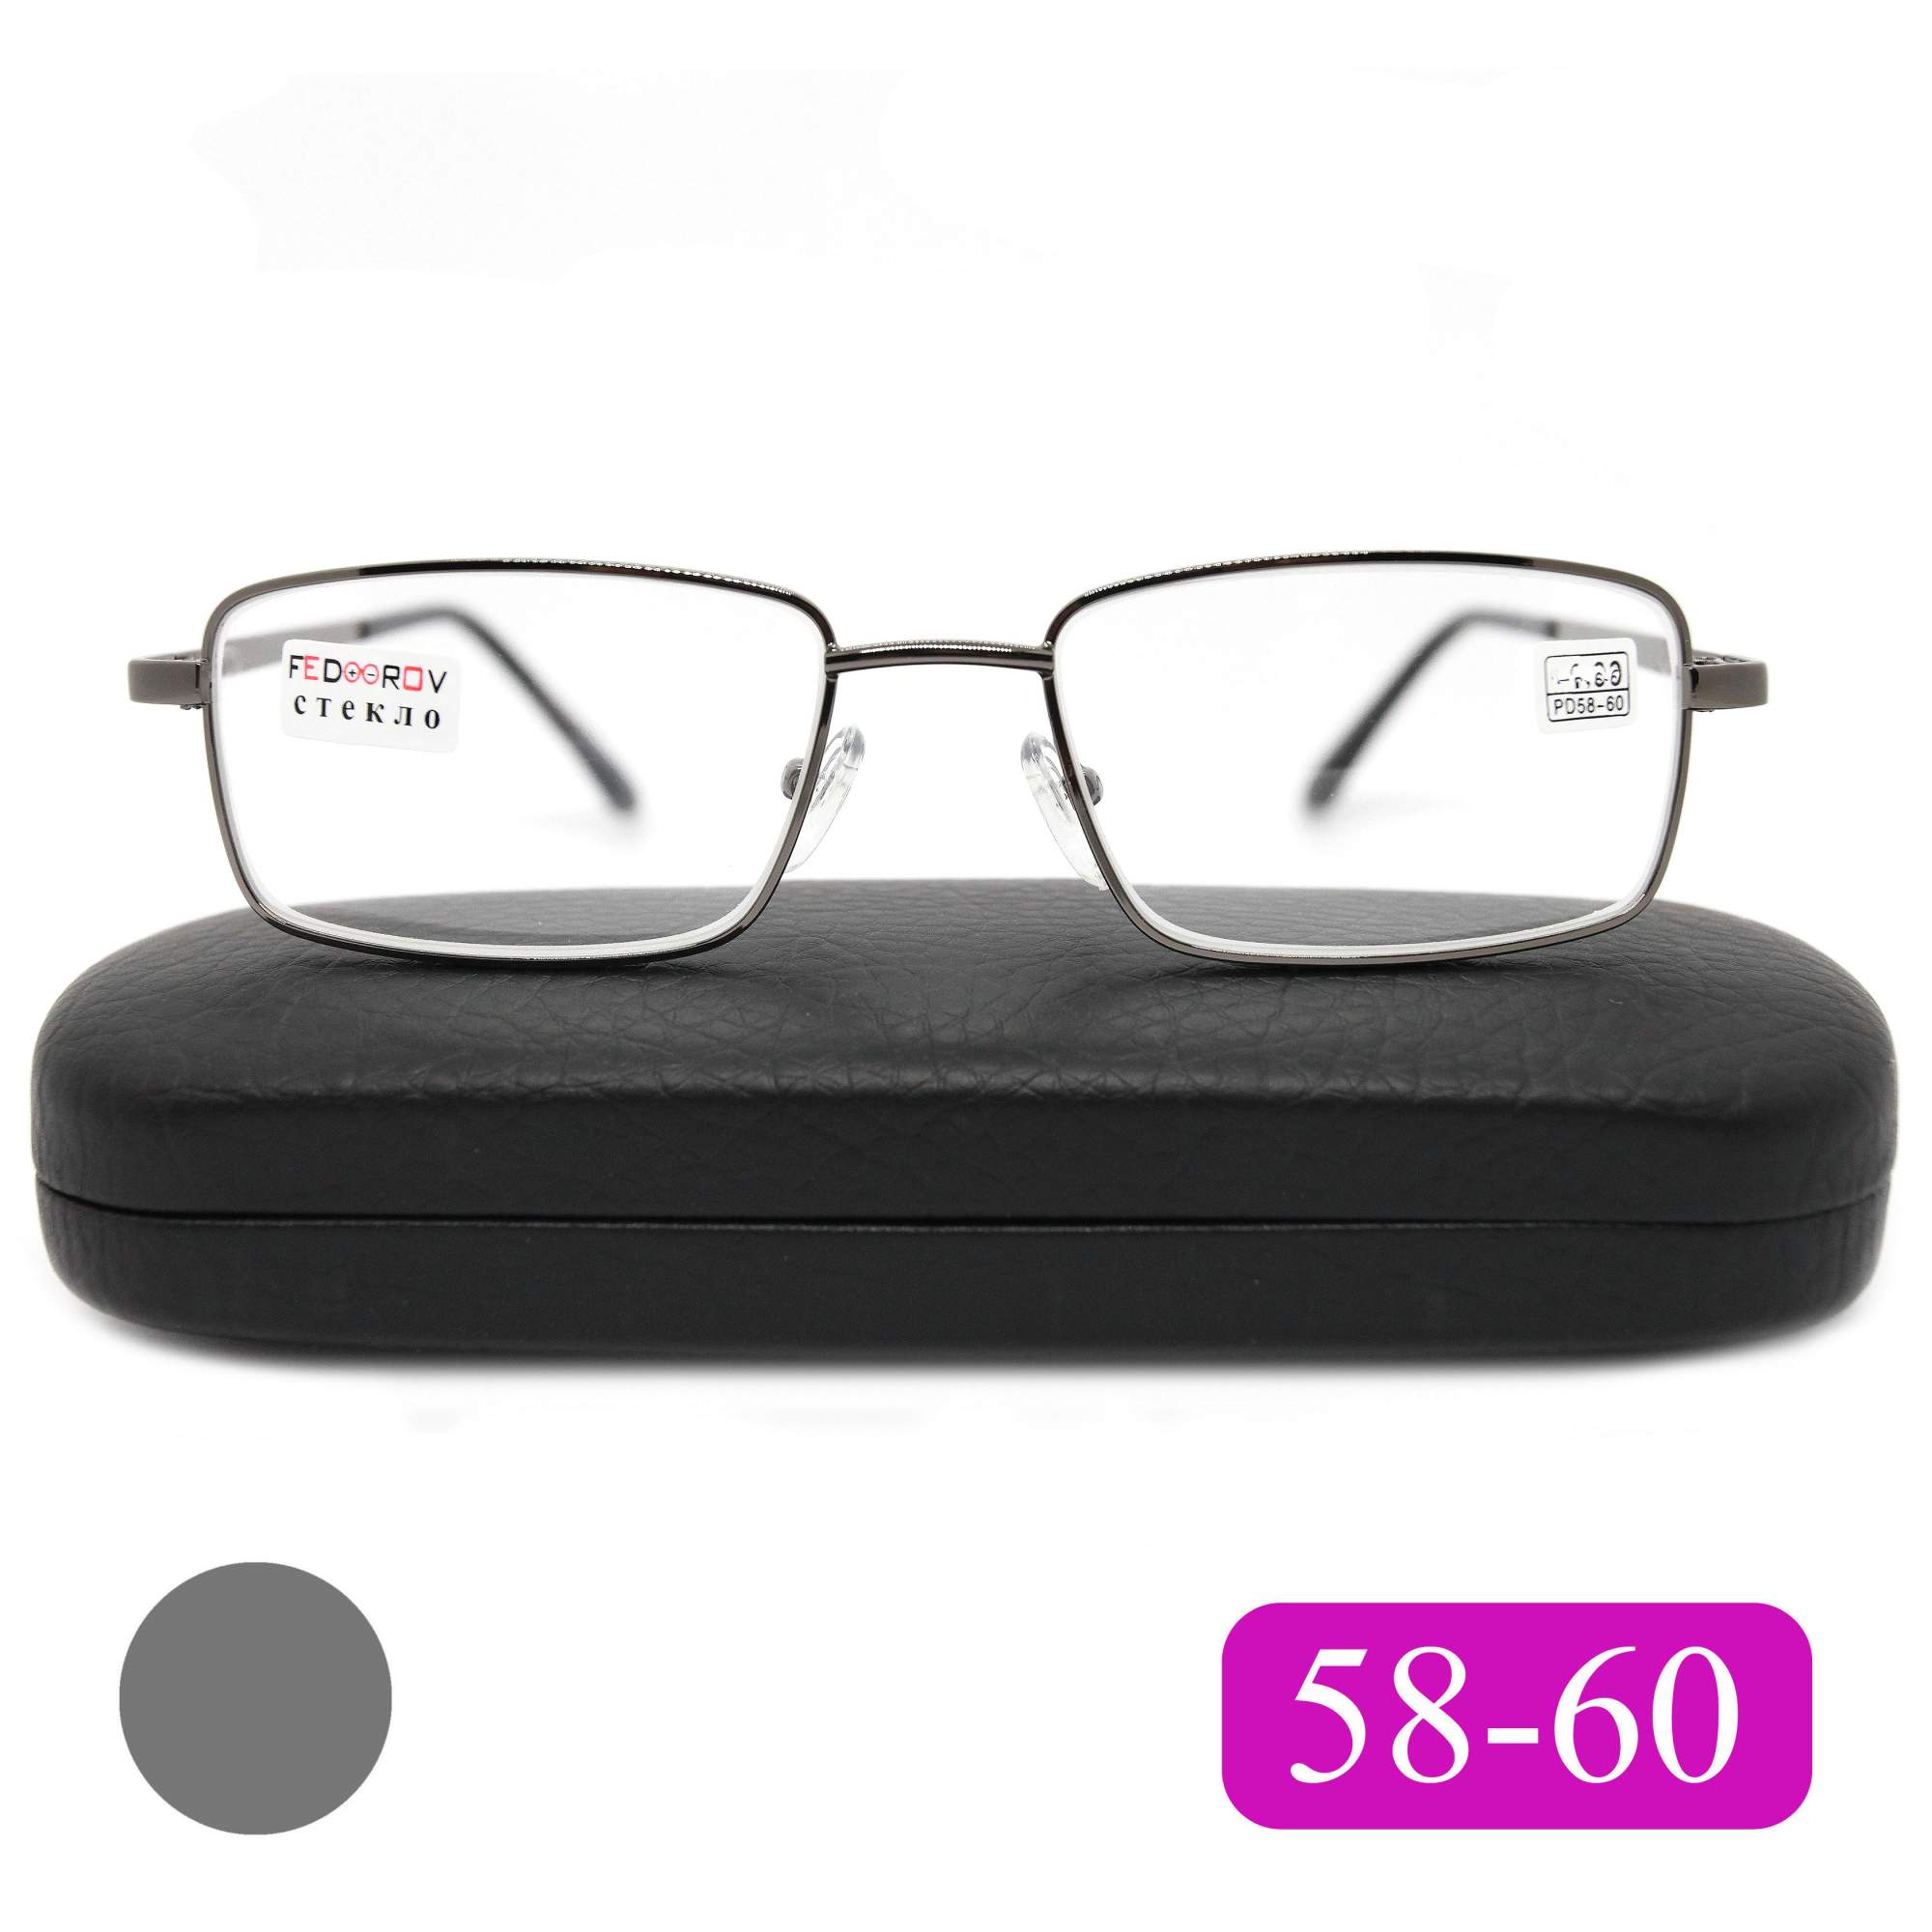 Готовые очки Fedrov 569, со стеклянной линзой, +3,75, c футляром, цвет серый, РЦ 58-60